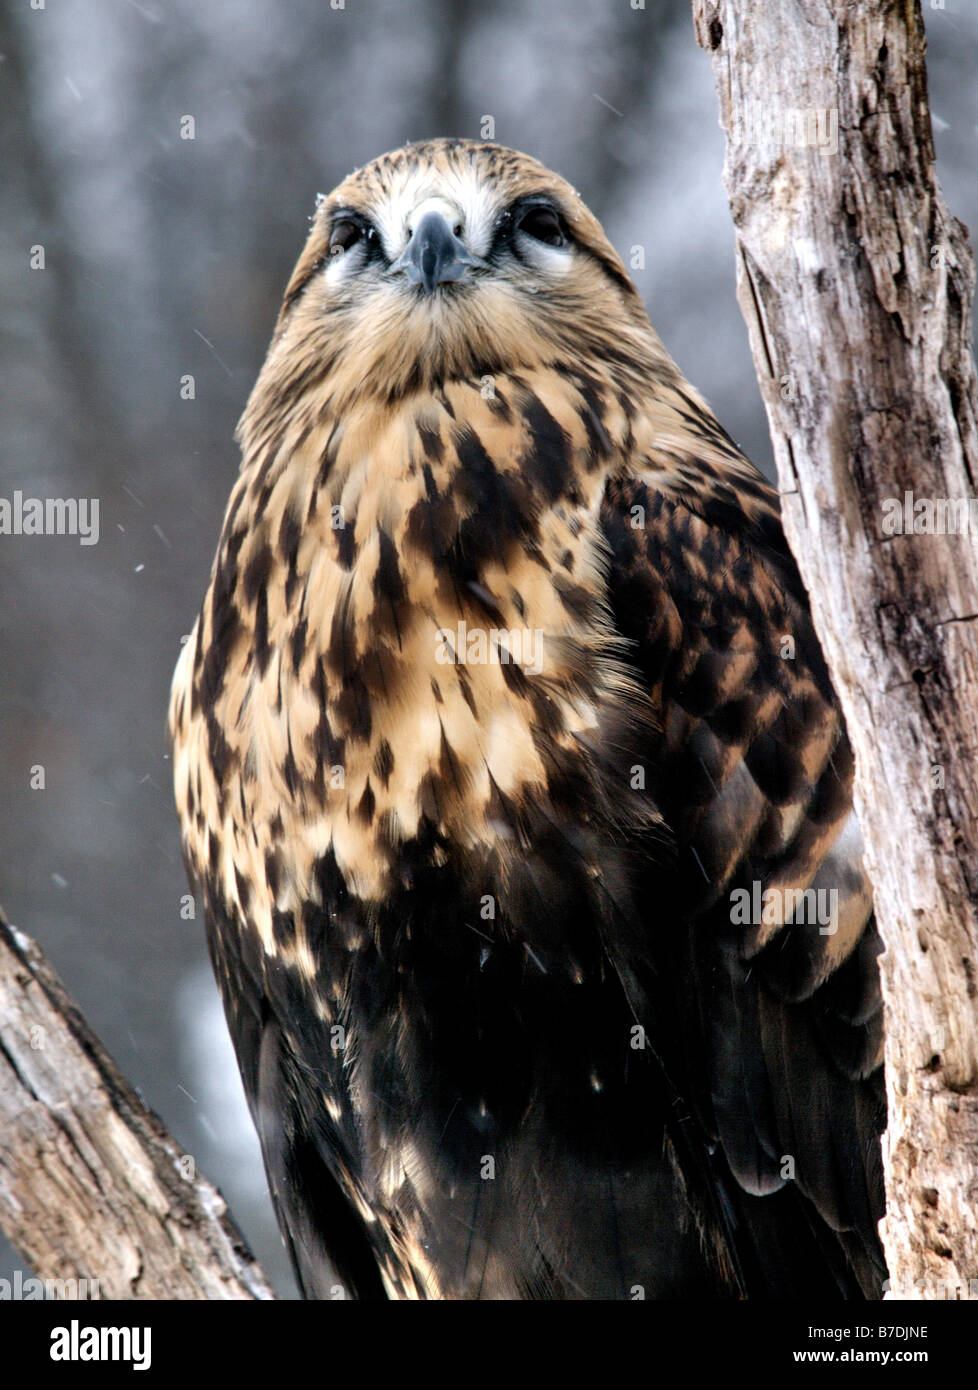 Closeup of head of a Rough-Legged Hawk (Falconiformes) looking toward the camera. Stock Photo